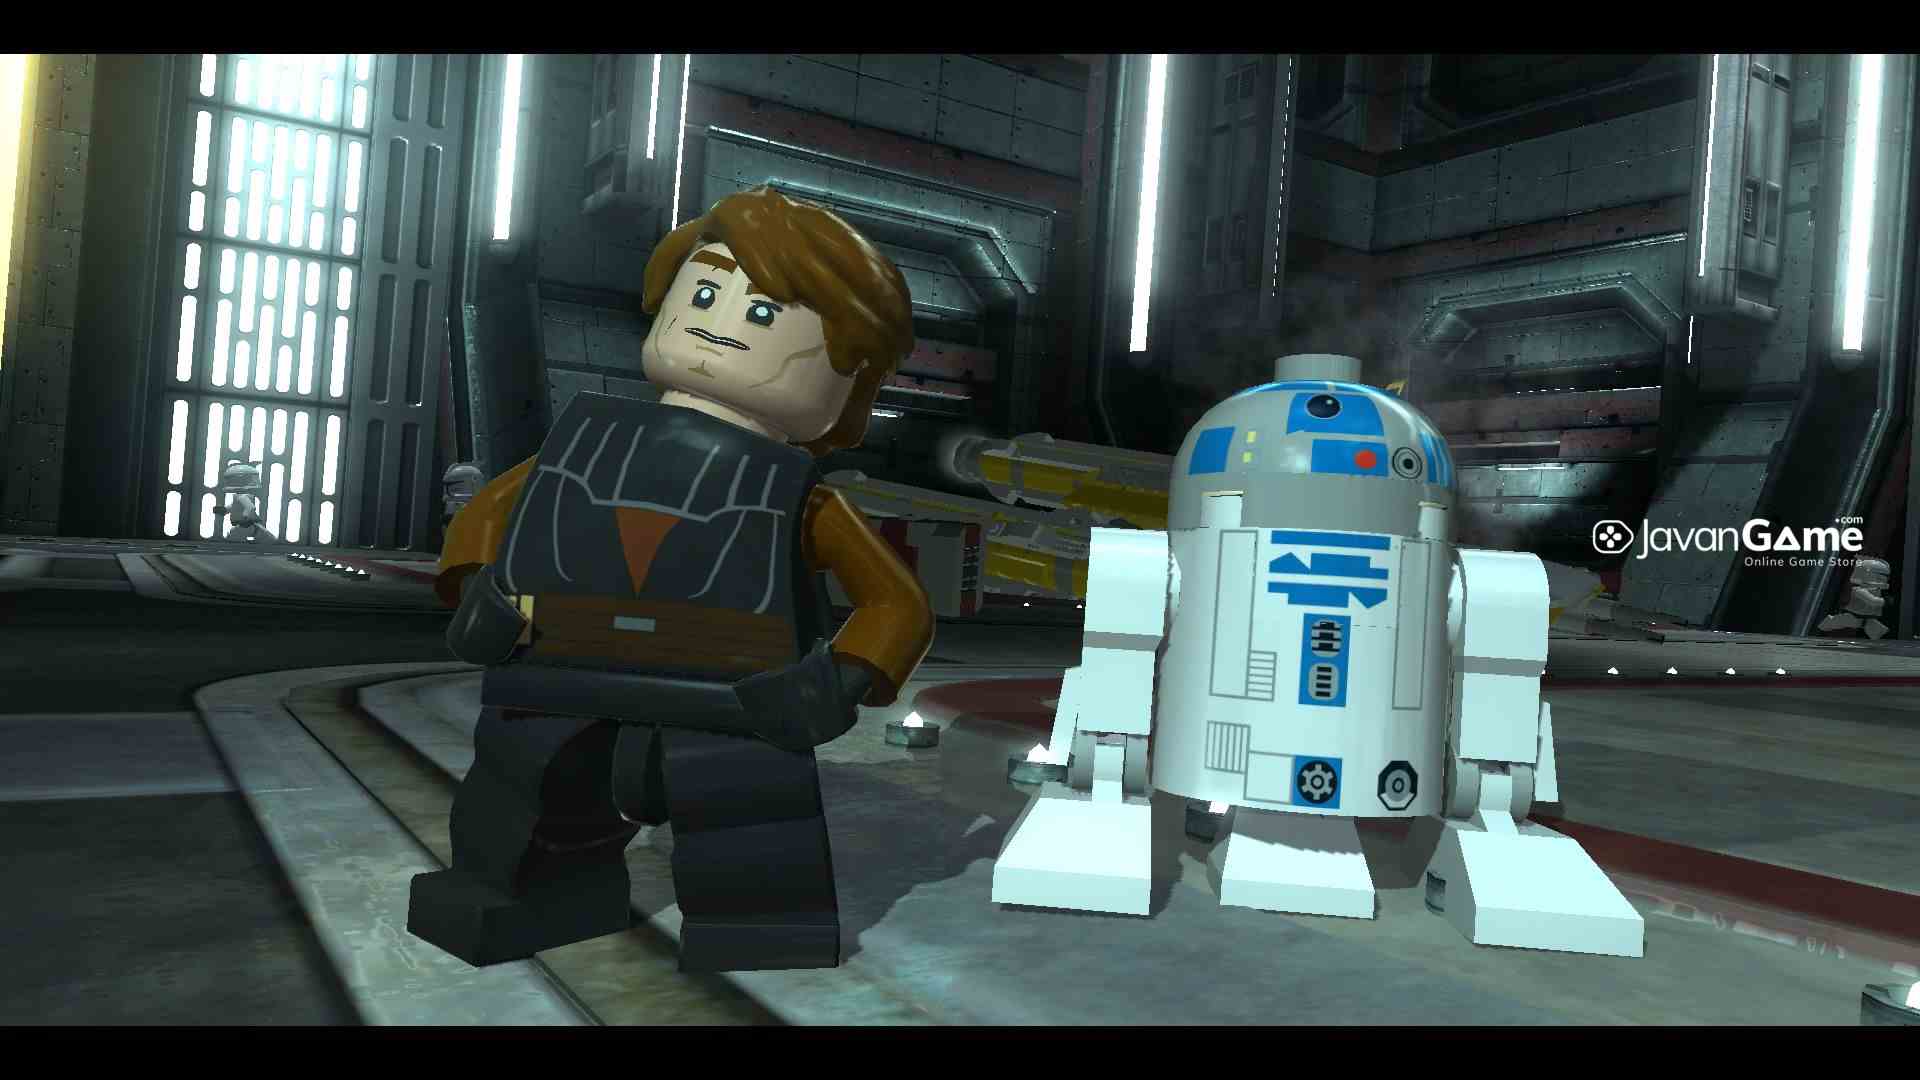 بازی LEGO Star Wars III the Clone Wars برای PC